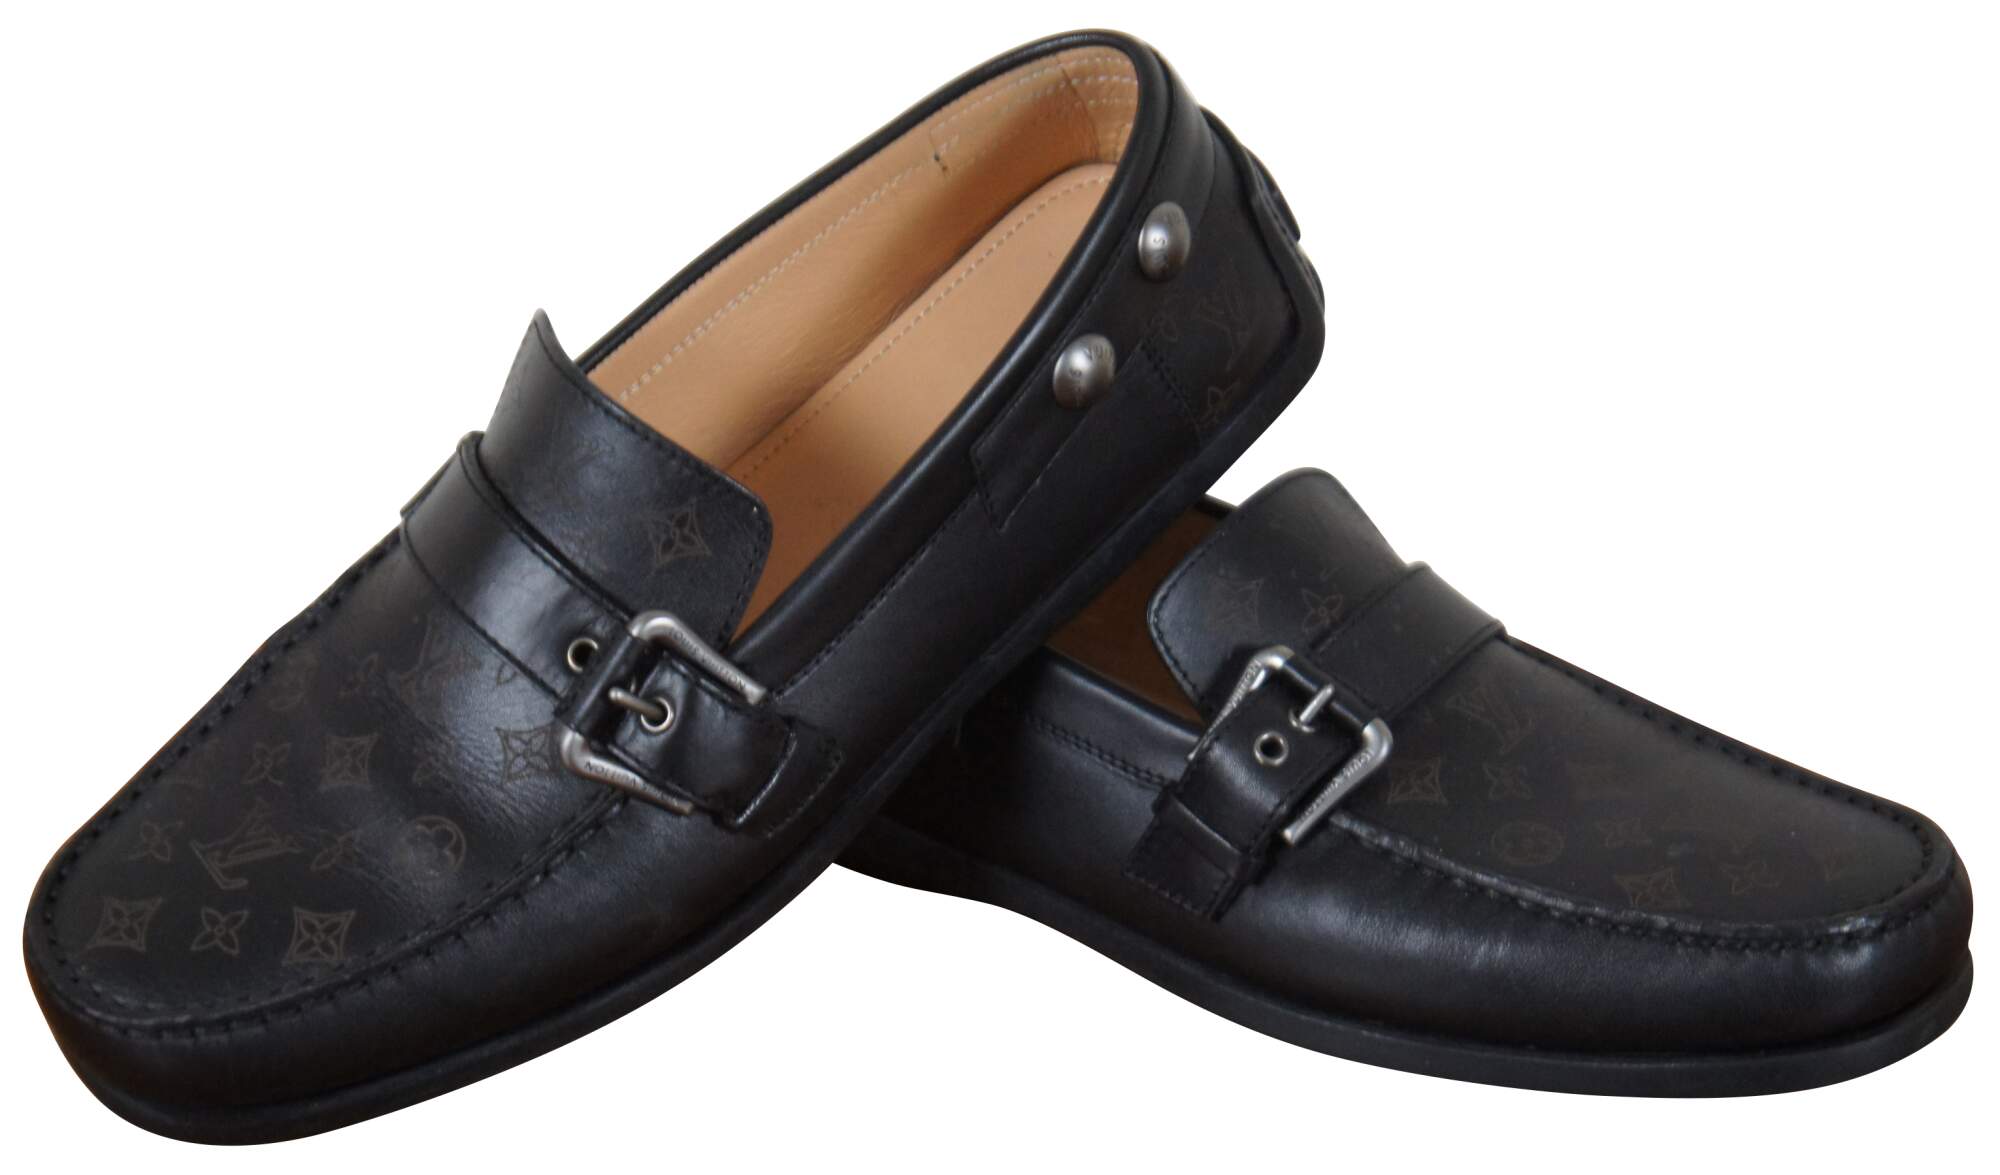 Louis Vuitton men's boat shoes  Loafers men, Boat shoes mens, Casual shoes